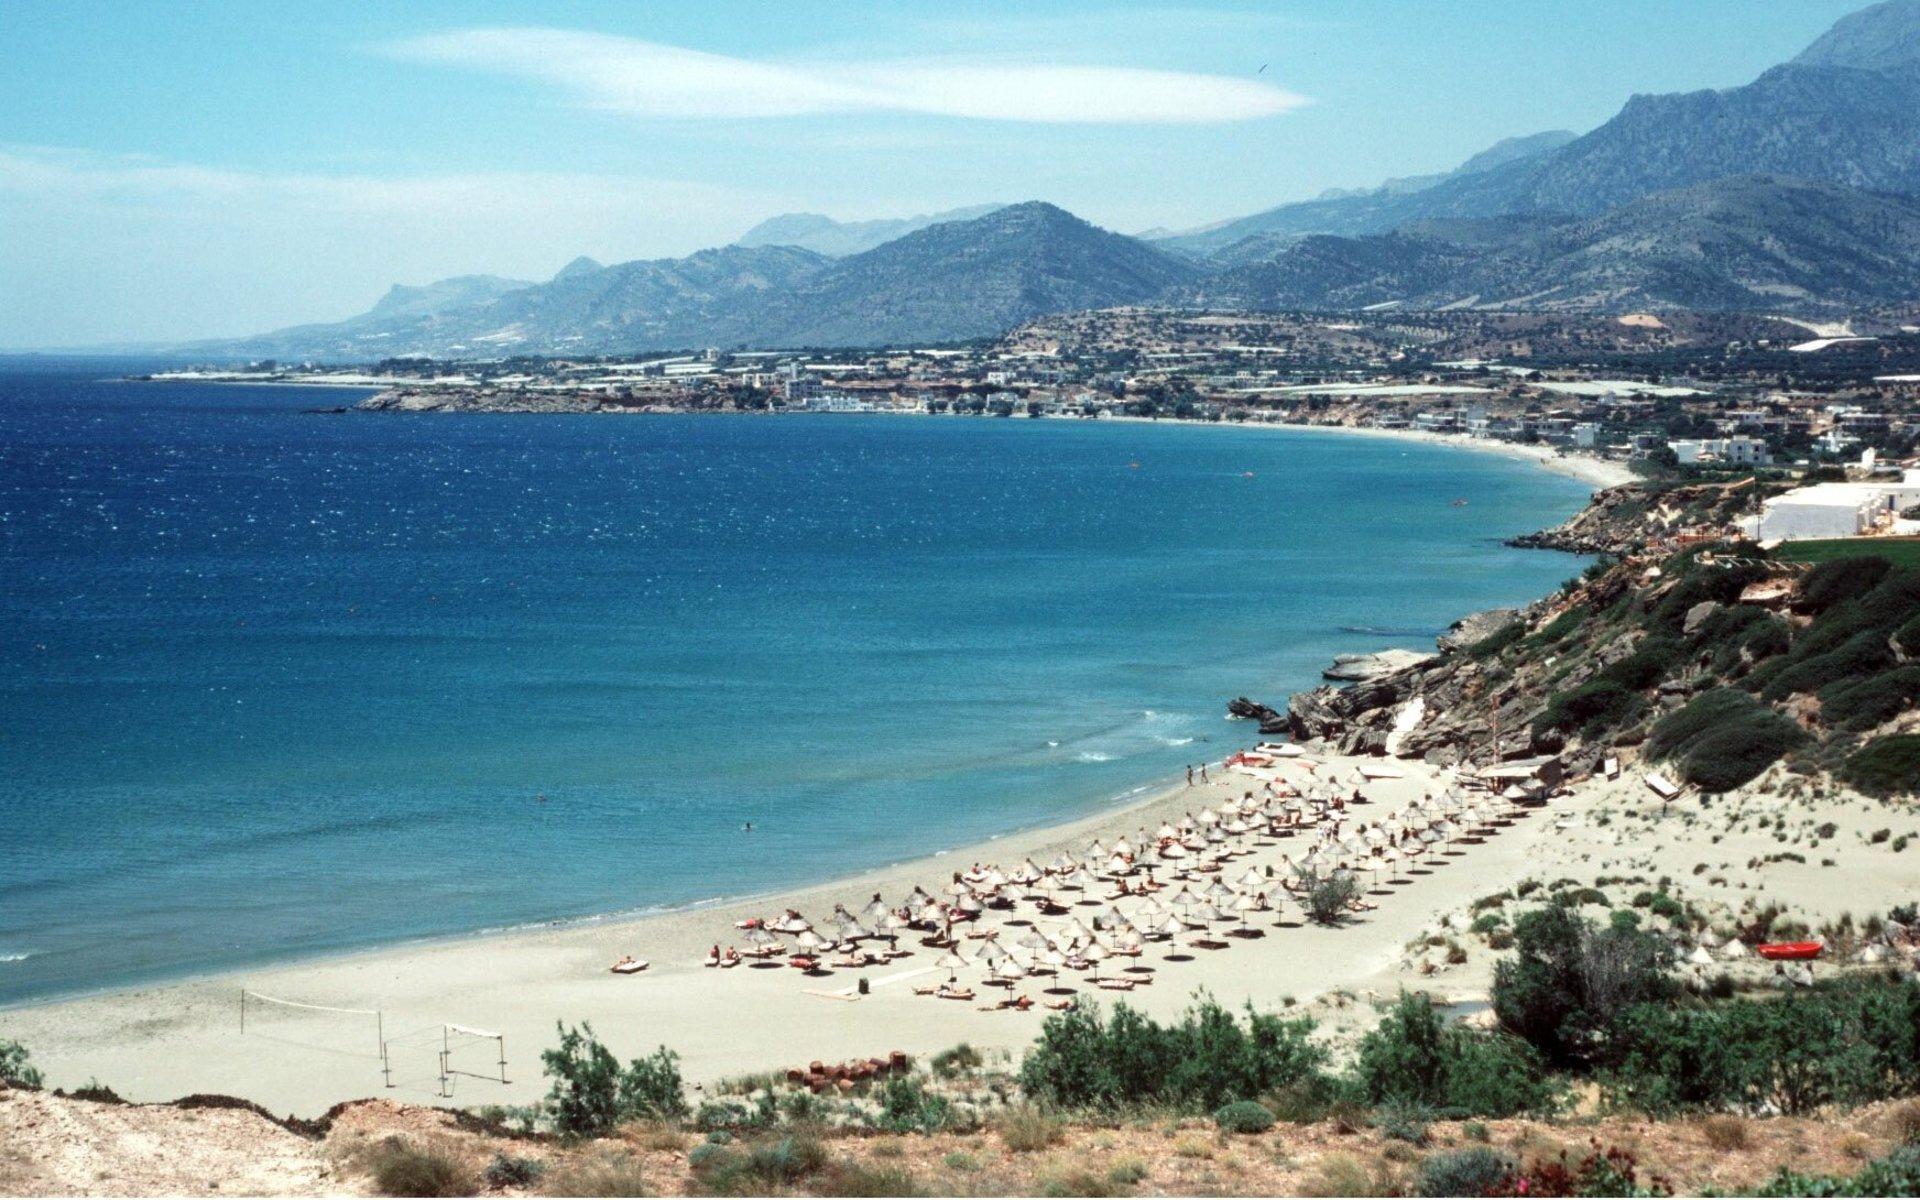 Grekland, med bland annat Kreta, öppnade nyligen upp för turister. Läget kan dock snabbt ändras om smittspridningen ökar.